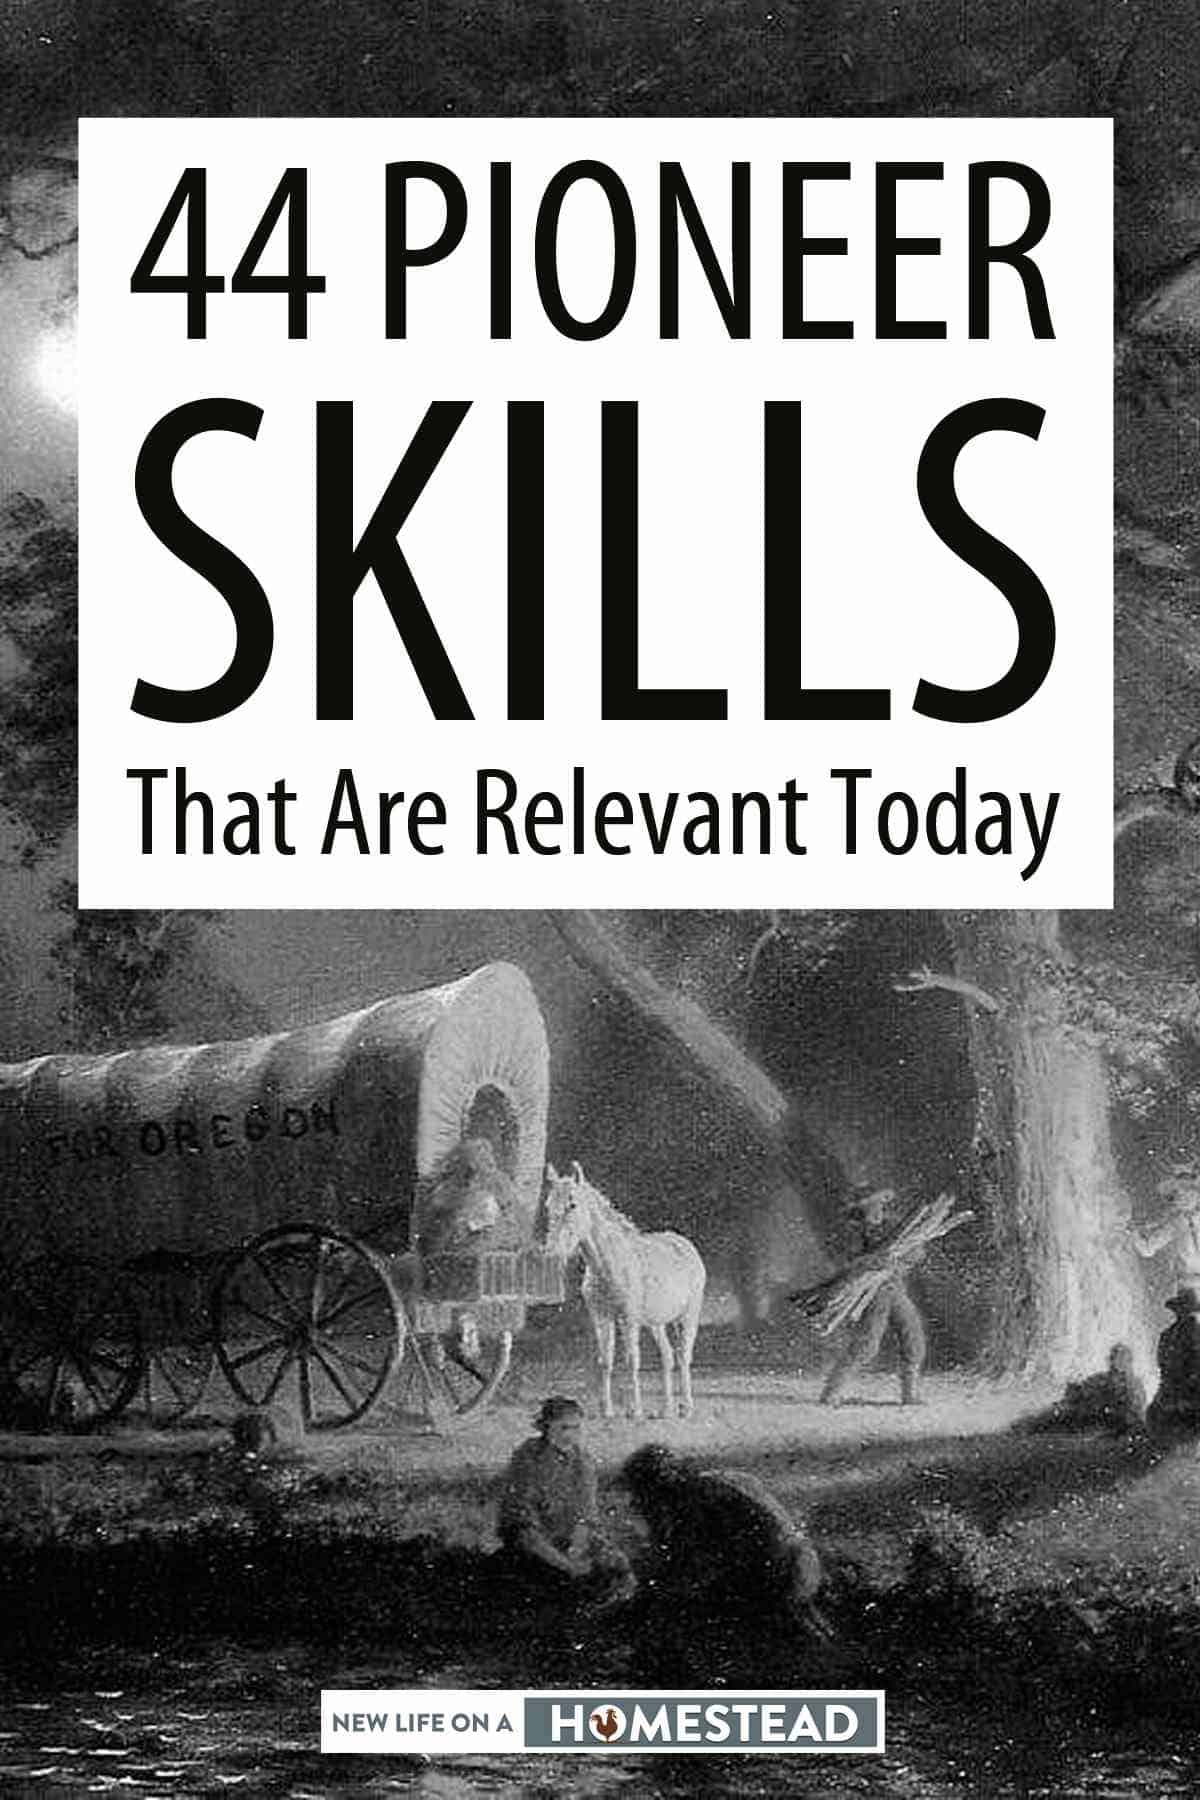 pioneer skills Pinterest image